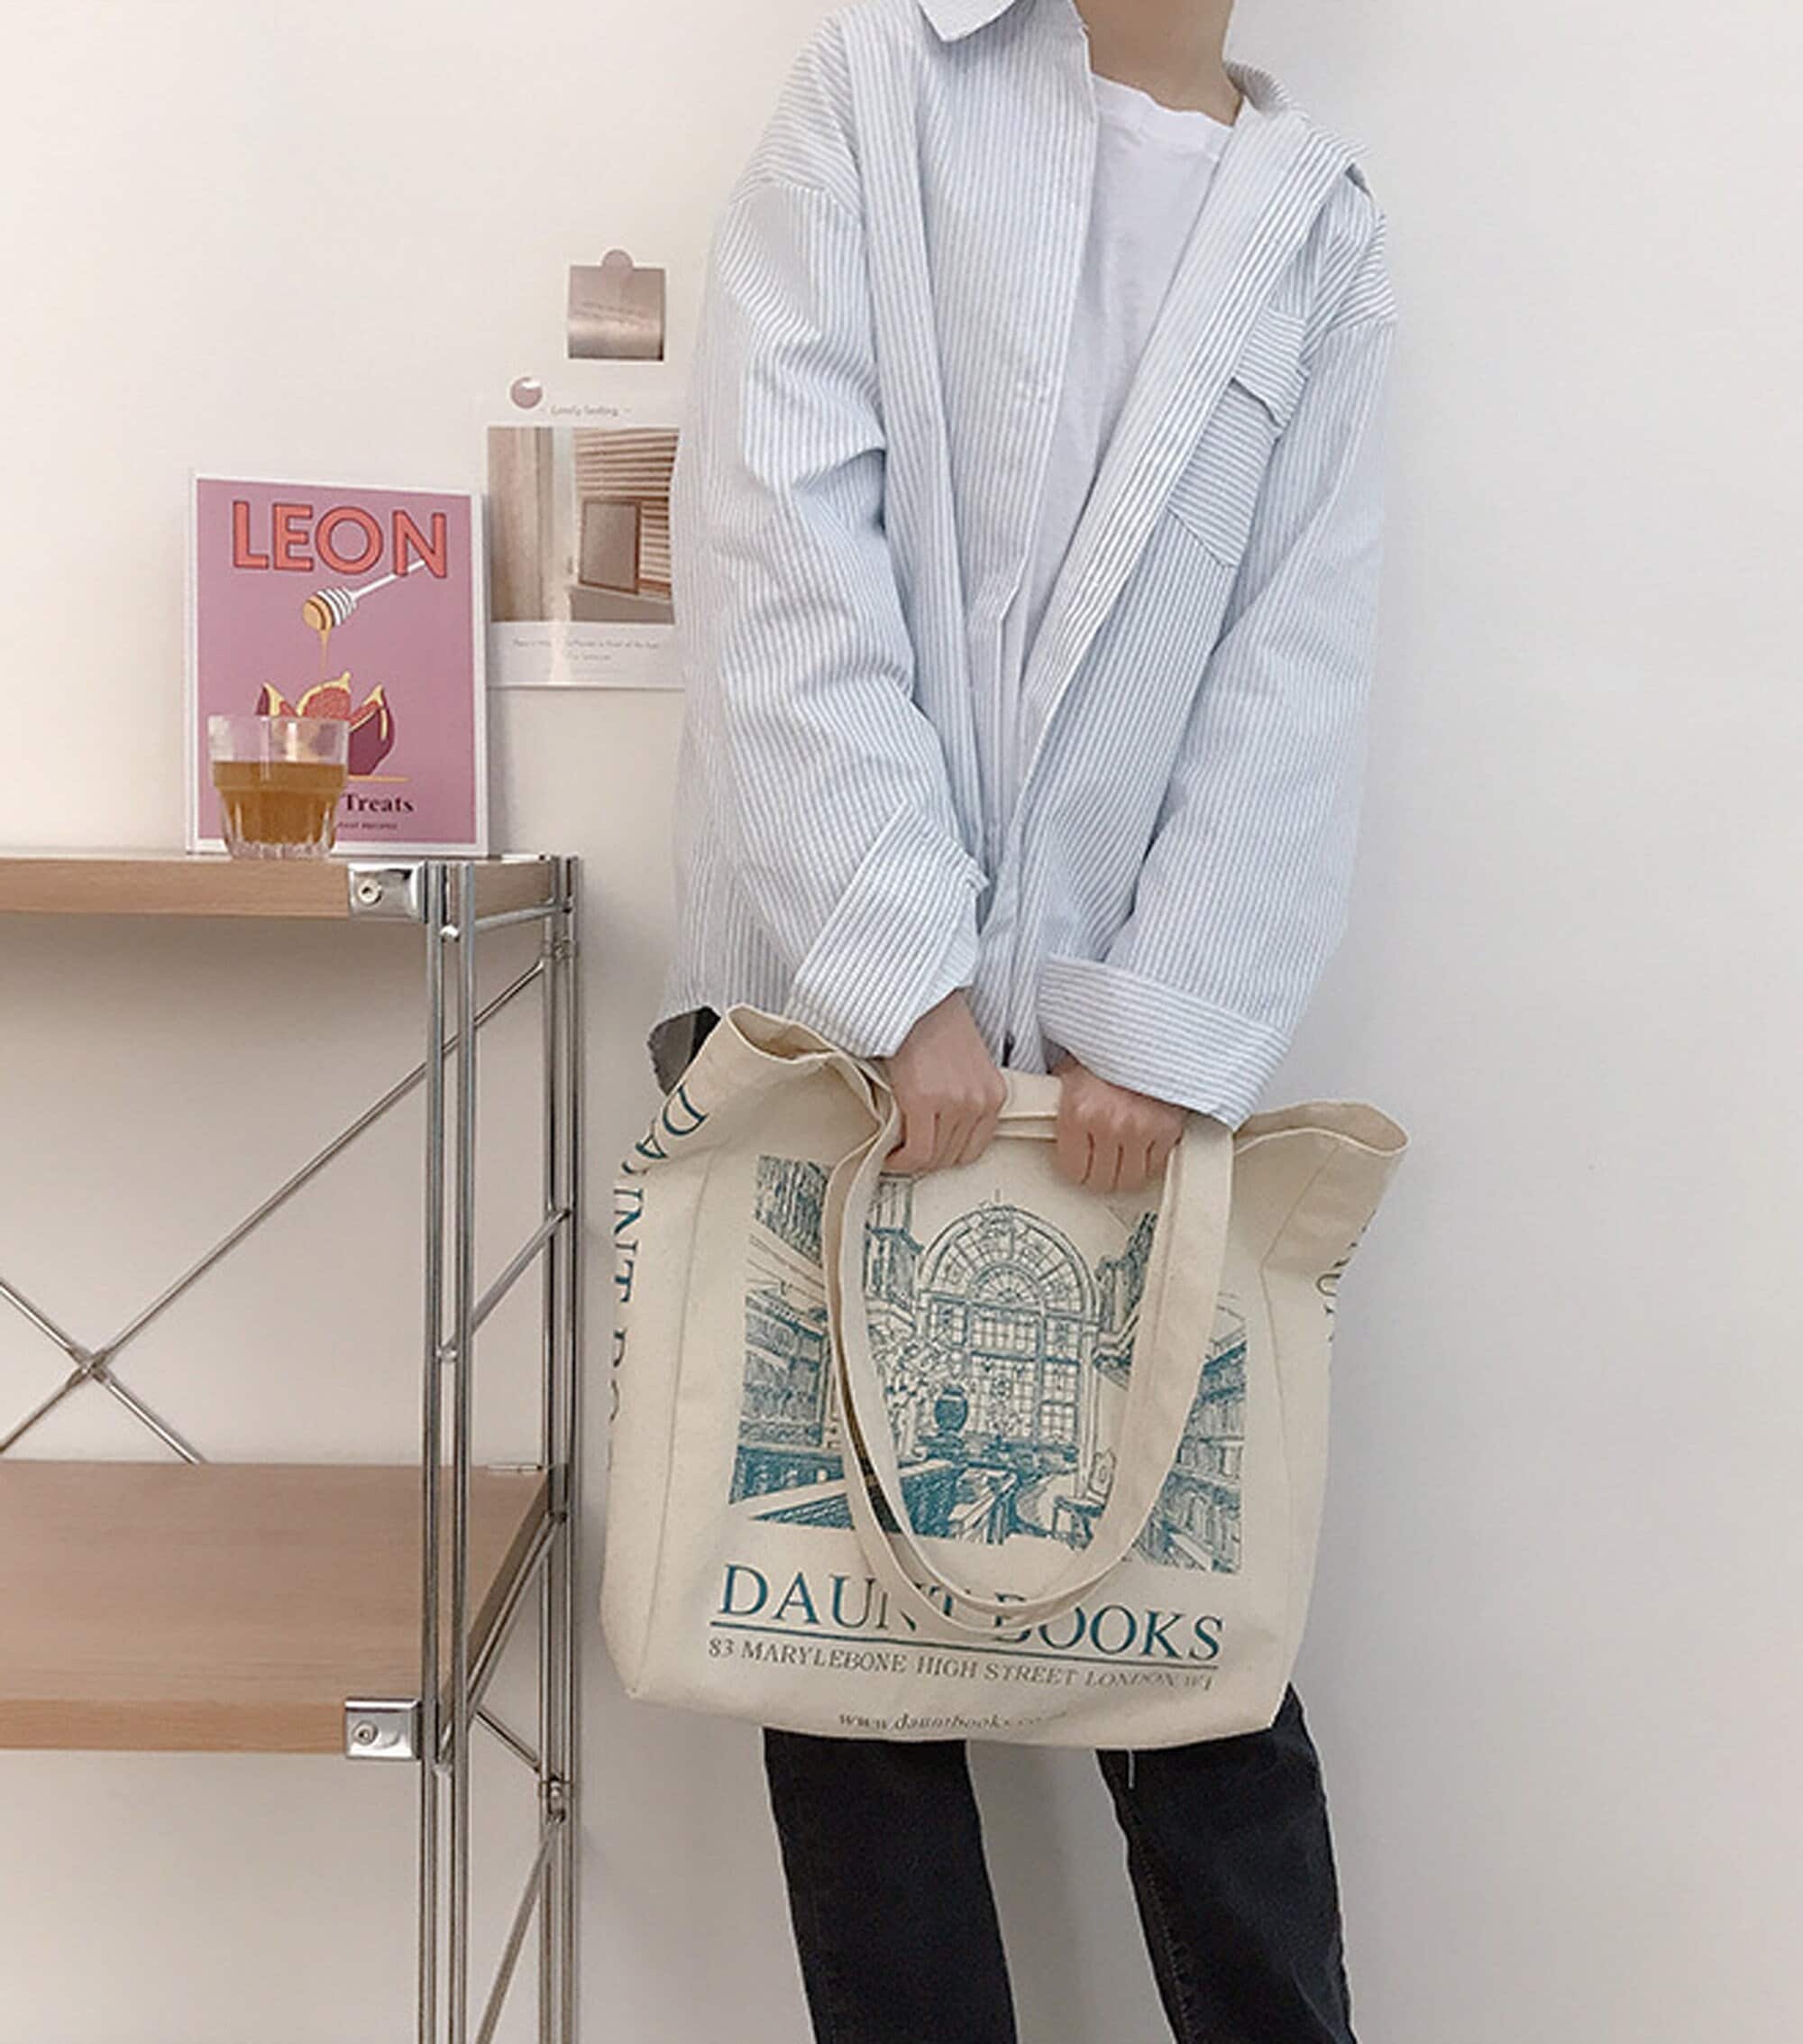 New Fashion Large Capacity Girl Shoulder Bag Korean Lovely Women